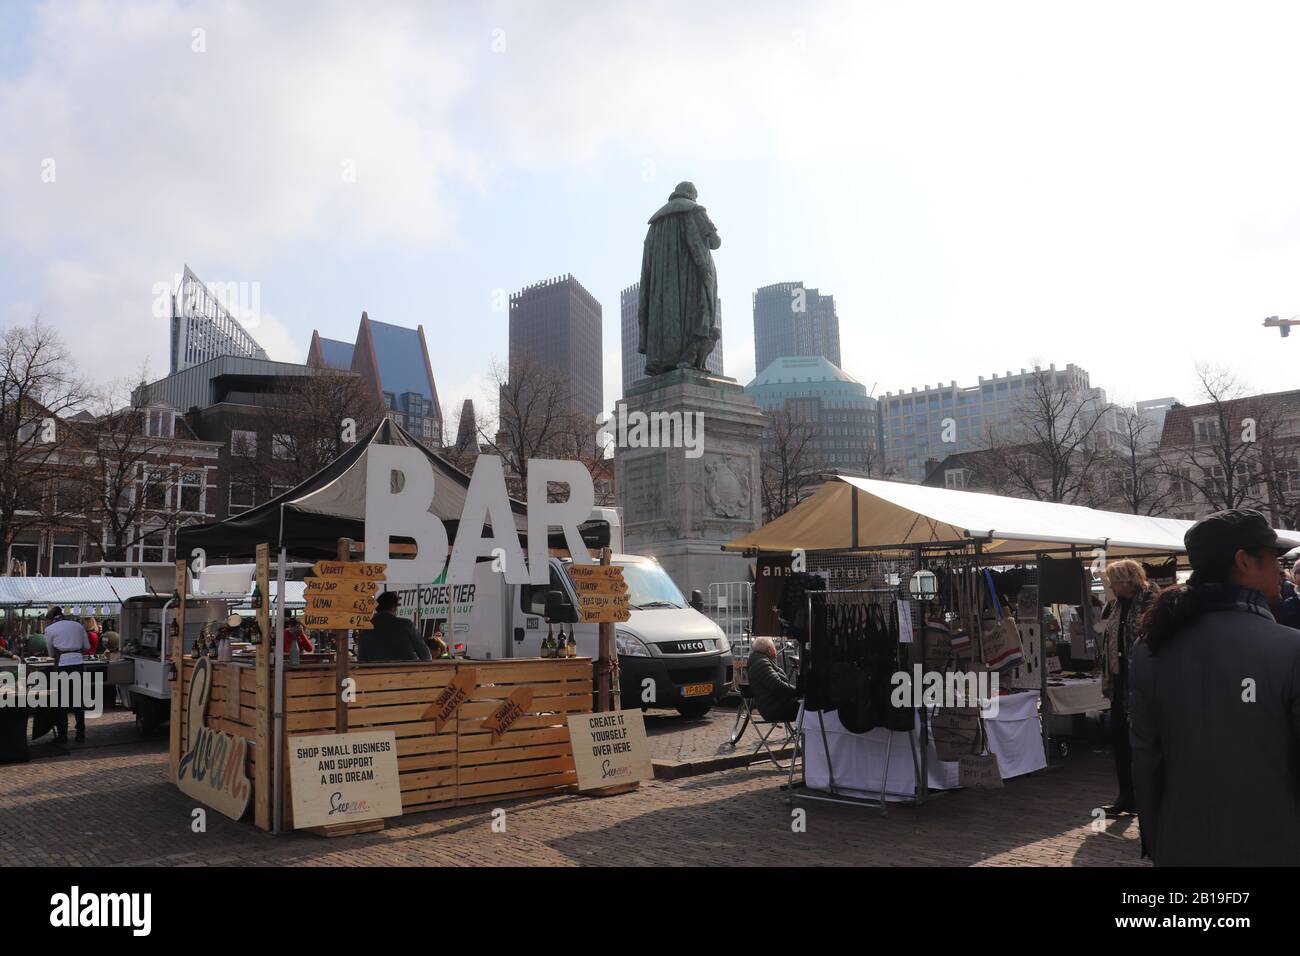 Ich liebe Straßenmärkte, die verkauften Artikel, die Straßennahrung. Diese Fotos stammen vom Haager Straßenmarkt Stockfoto